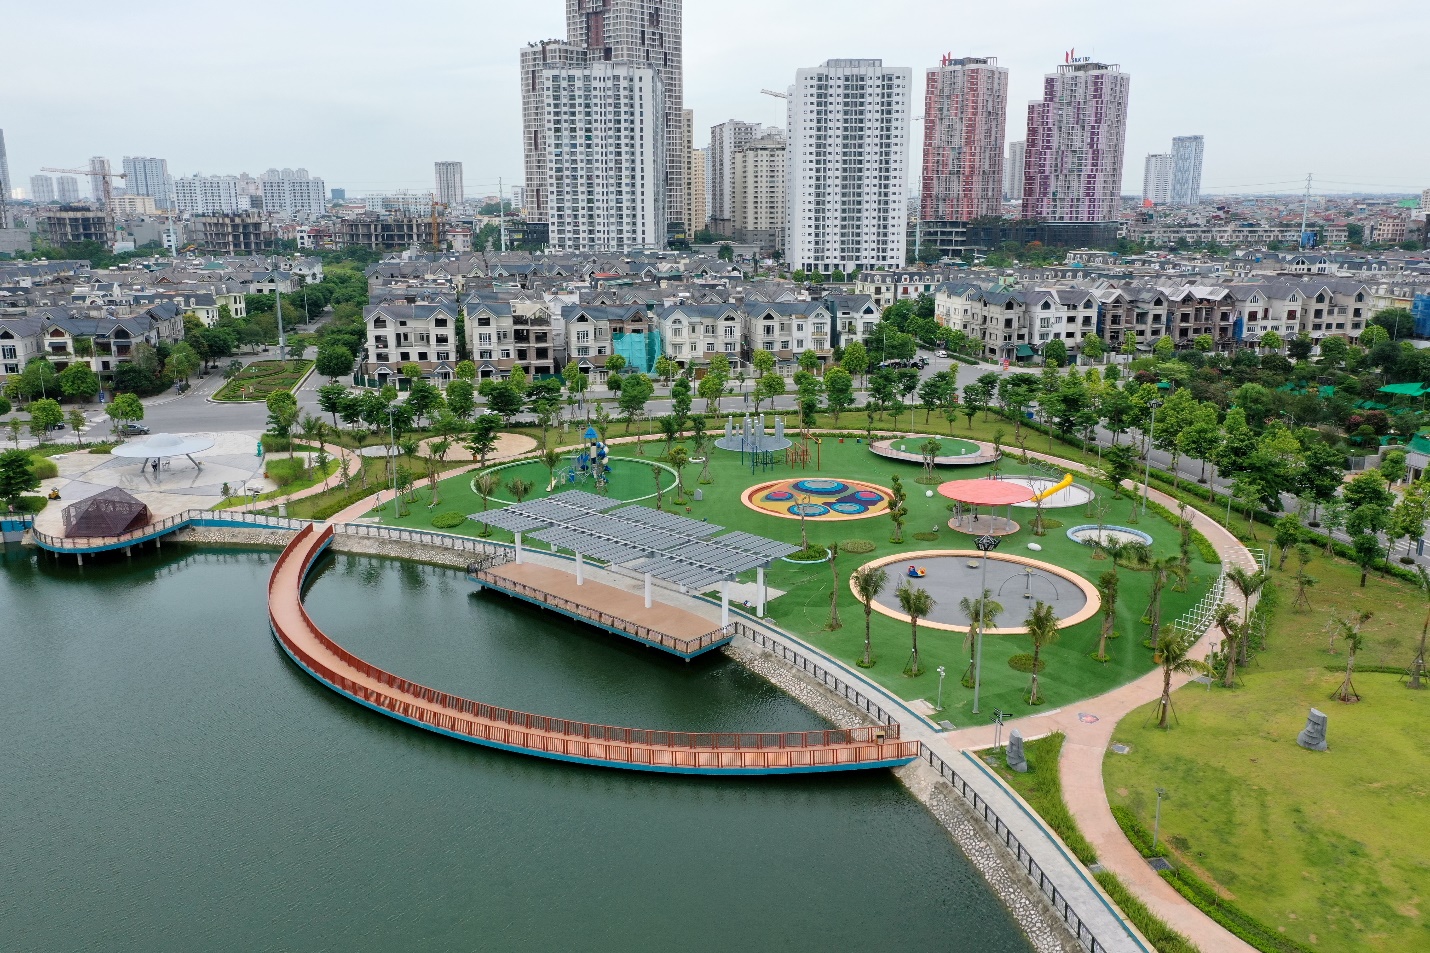 Khu đô thị Dương Nội: Miền đất hứa, giàu tiềm năng của khu vực phía Tây Thủ đô  - Ảnh 4